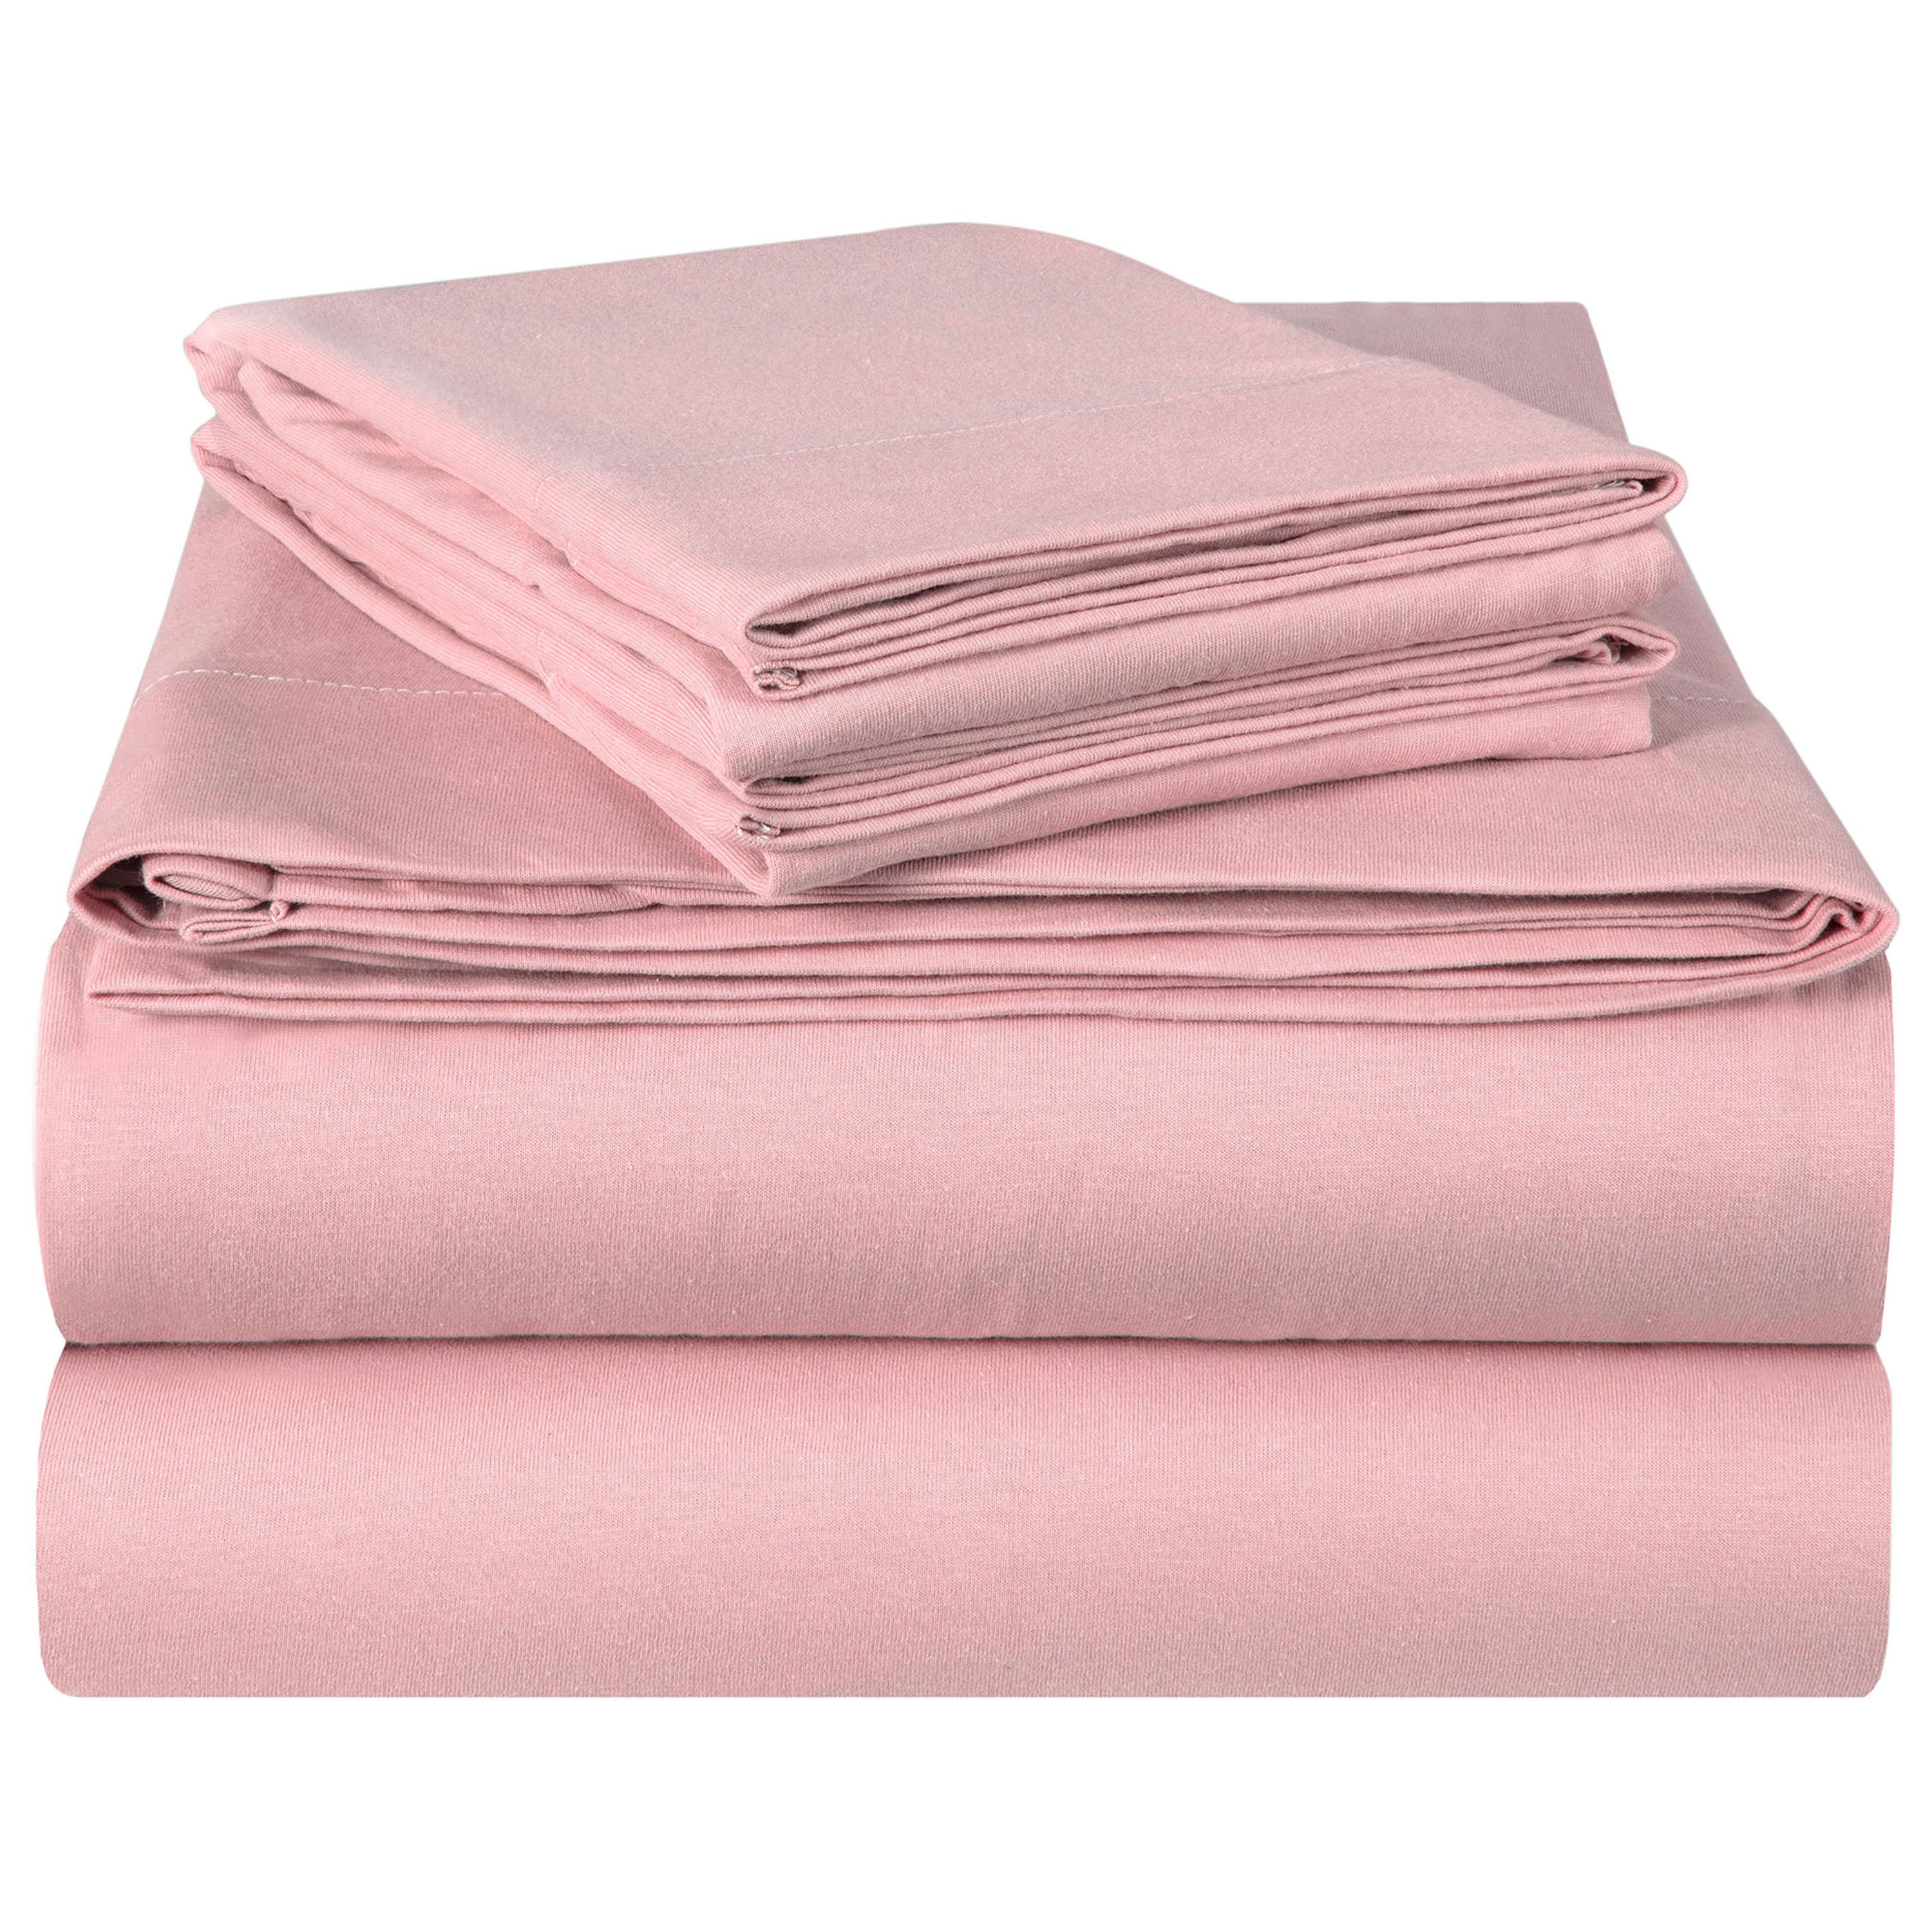 100 Cotton Bed Sheet Sets At Eric Hildebrand Blog